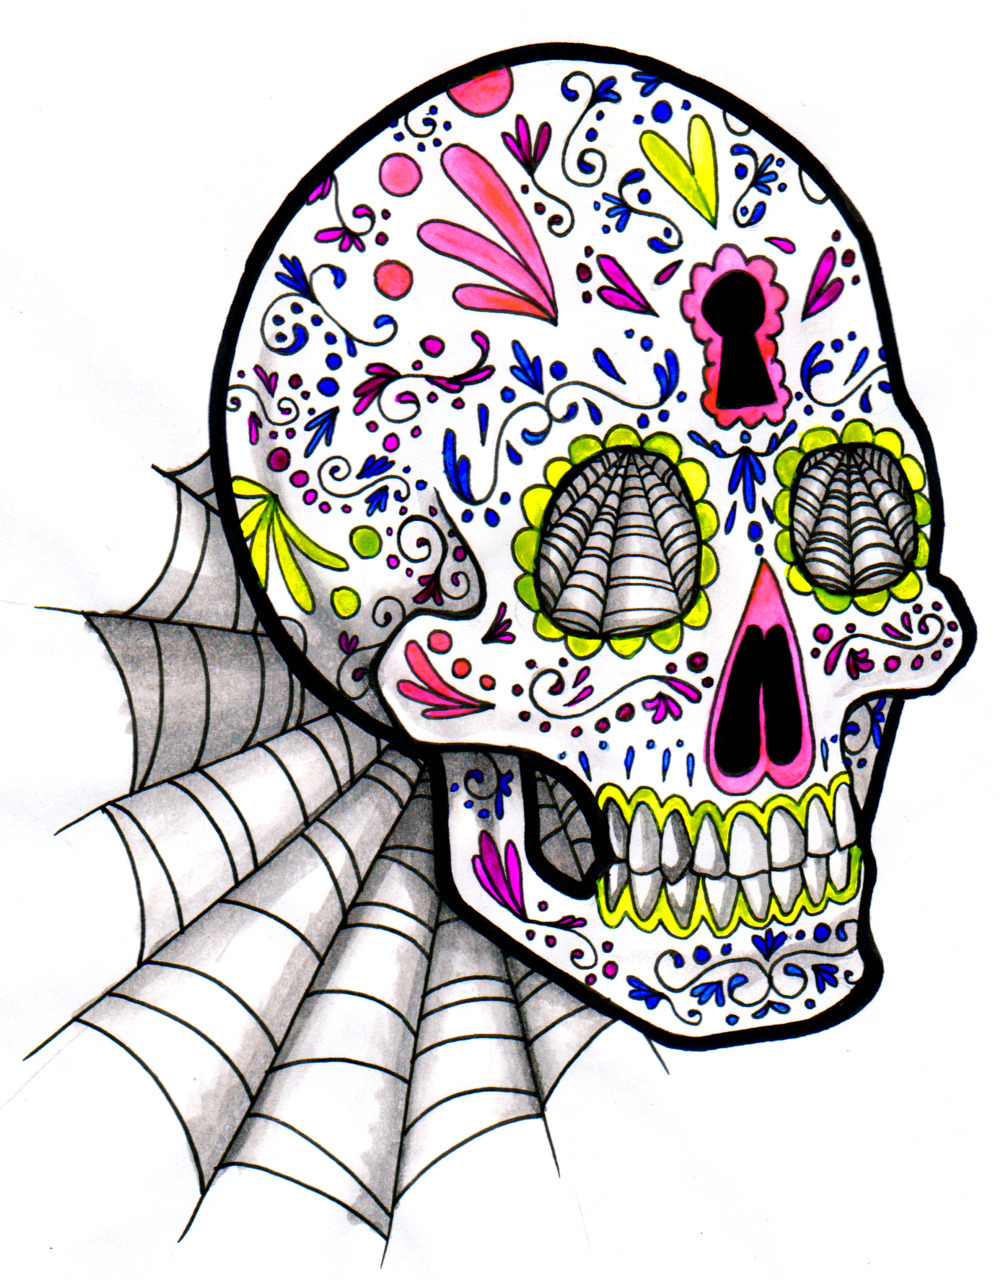 sugar skull ink and watercolor etsy.com/shop/mangoid f3m413.tumblr.com sandemma.com